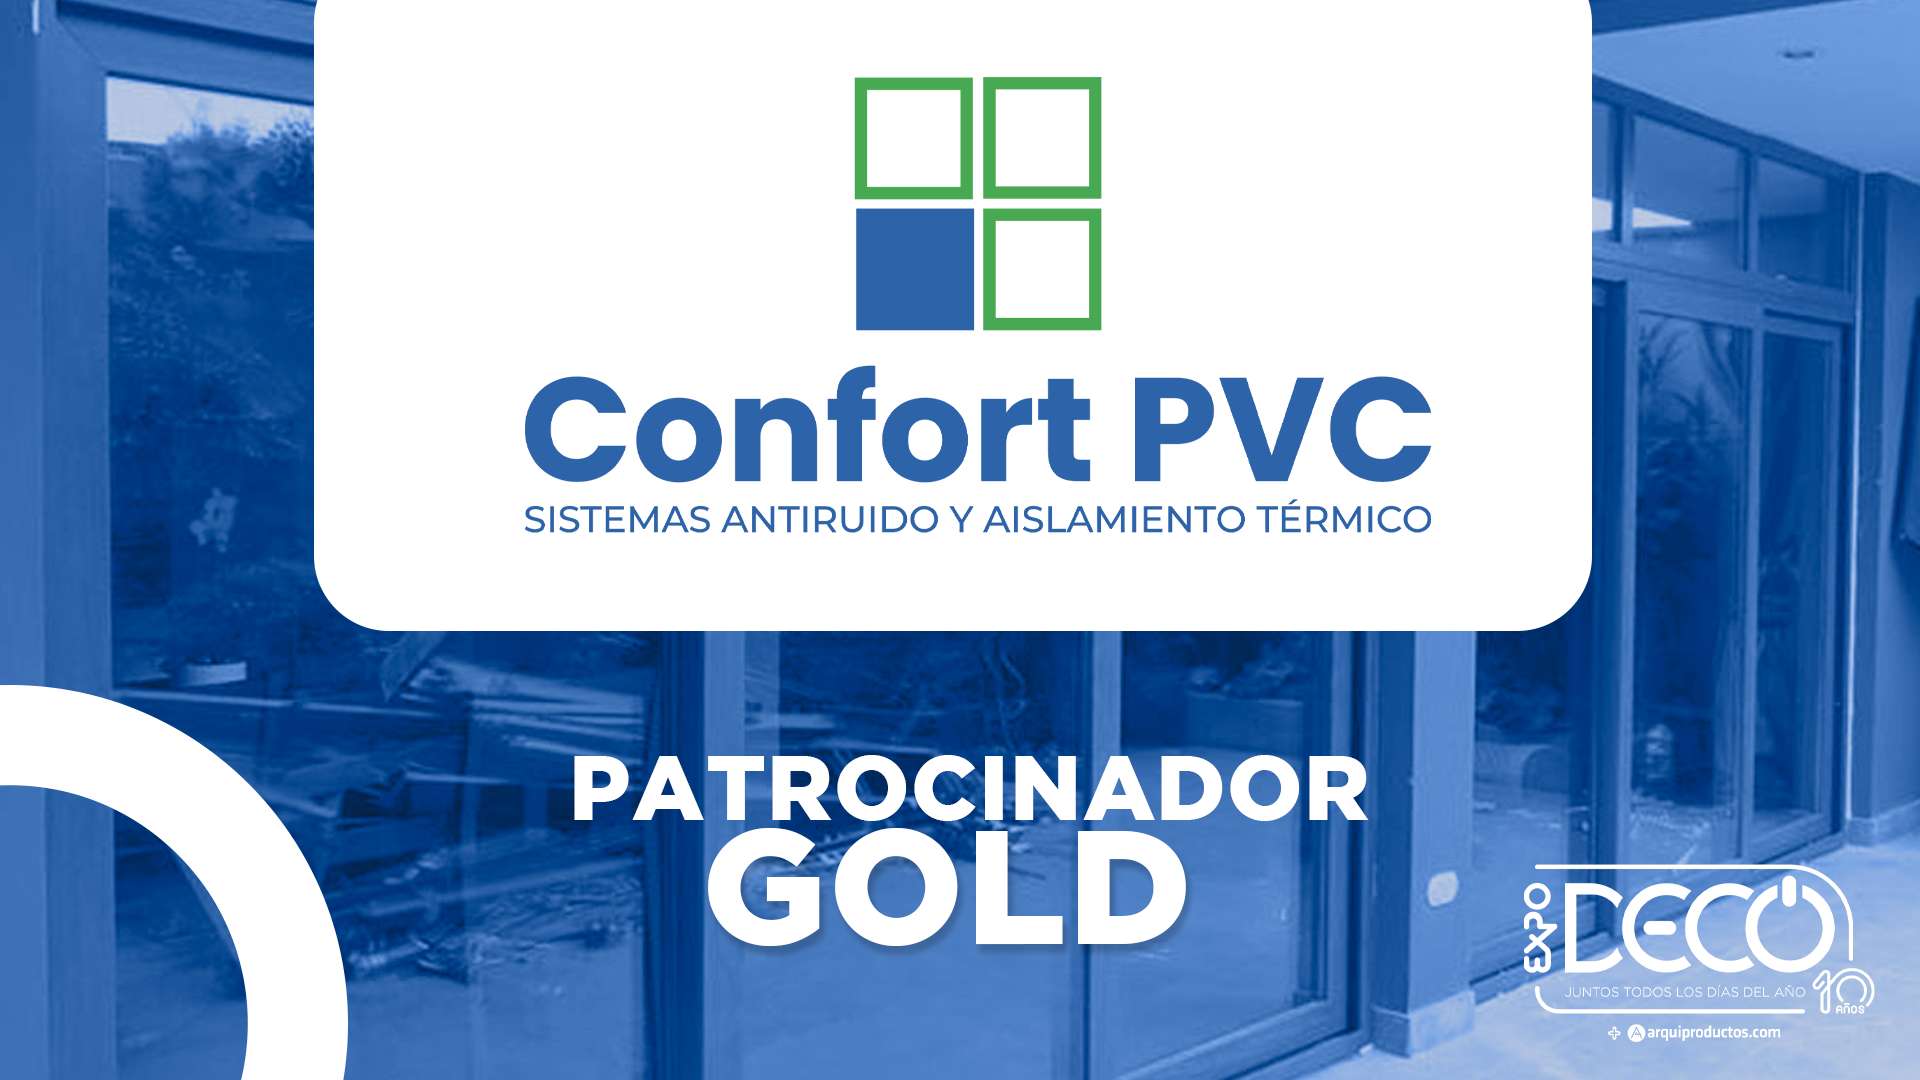 Patrocinador Gold: Confort PVC presente en la semana del diseño, decoración y arquitectura